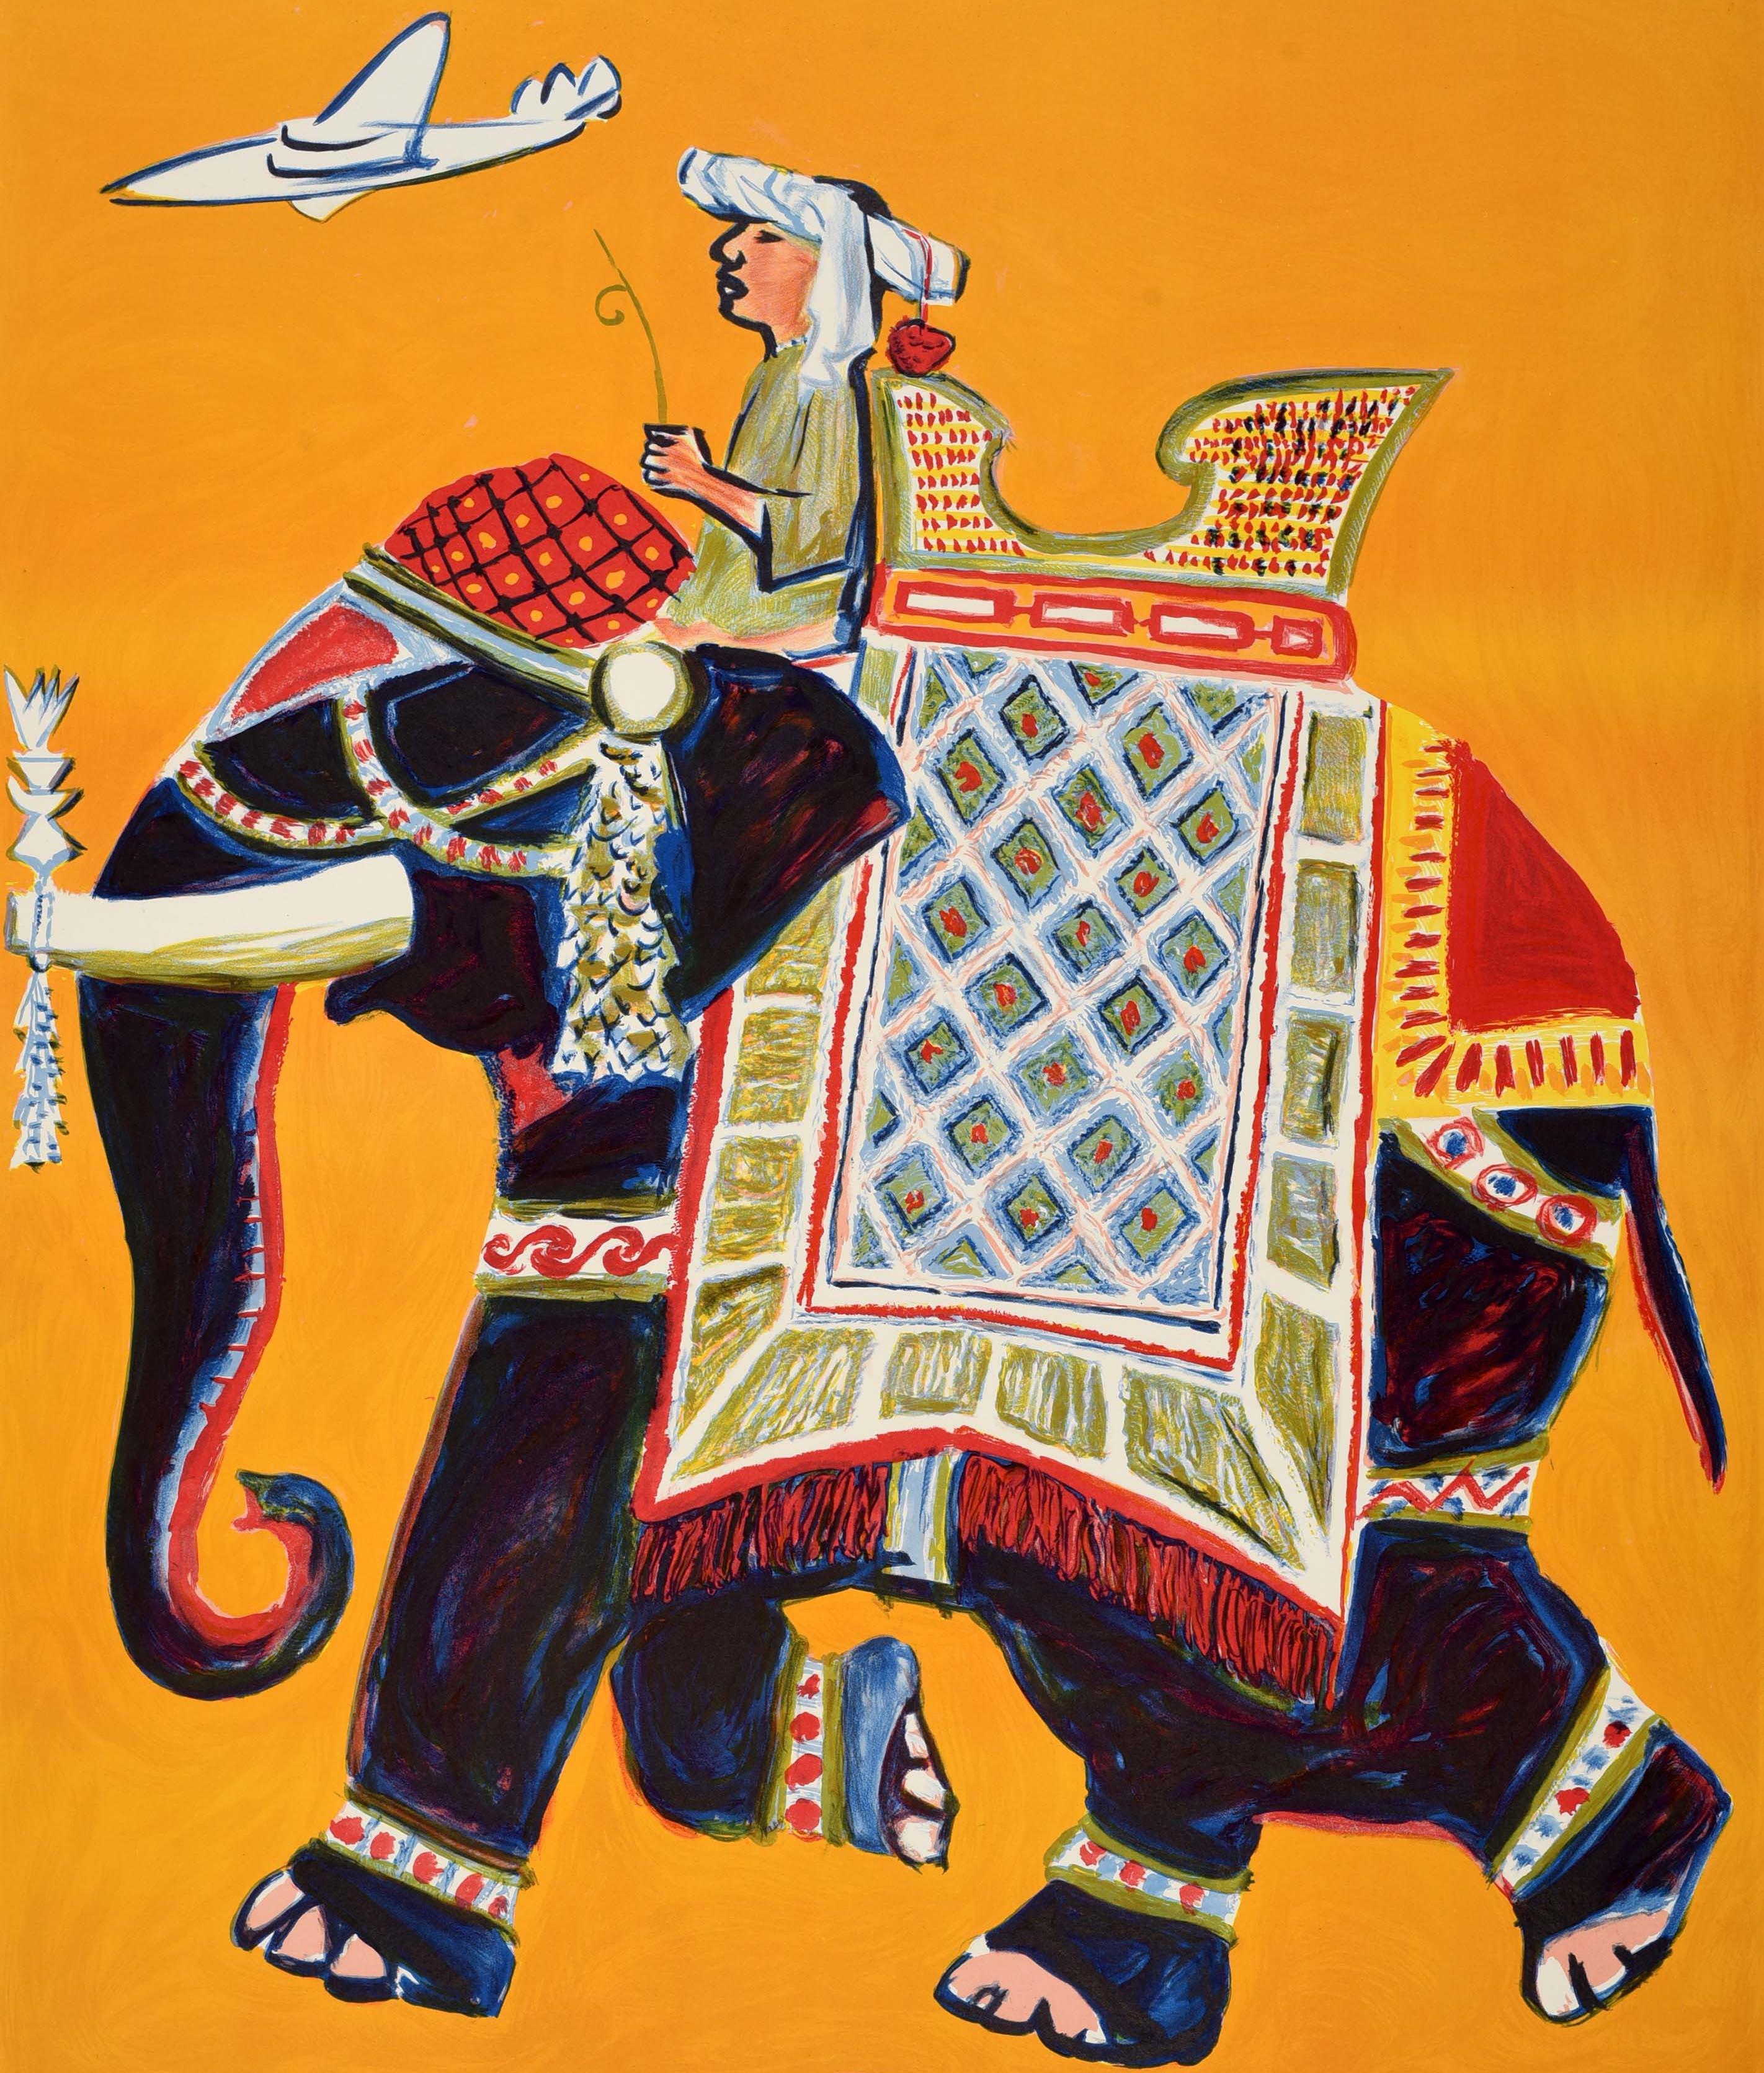 Affiche de voyage originale pour l'Asie émise par Air Ceylon - Fly the Sapphire Service to Ceylon - représentant un homme sur un éléphant décoré de tissus colorés avec un siège sur son dos sur un fond jaune, un avion volant sous le texte du titre en